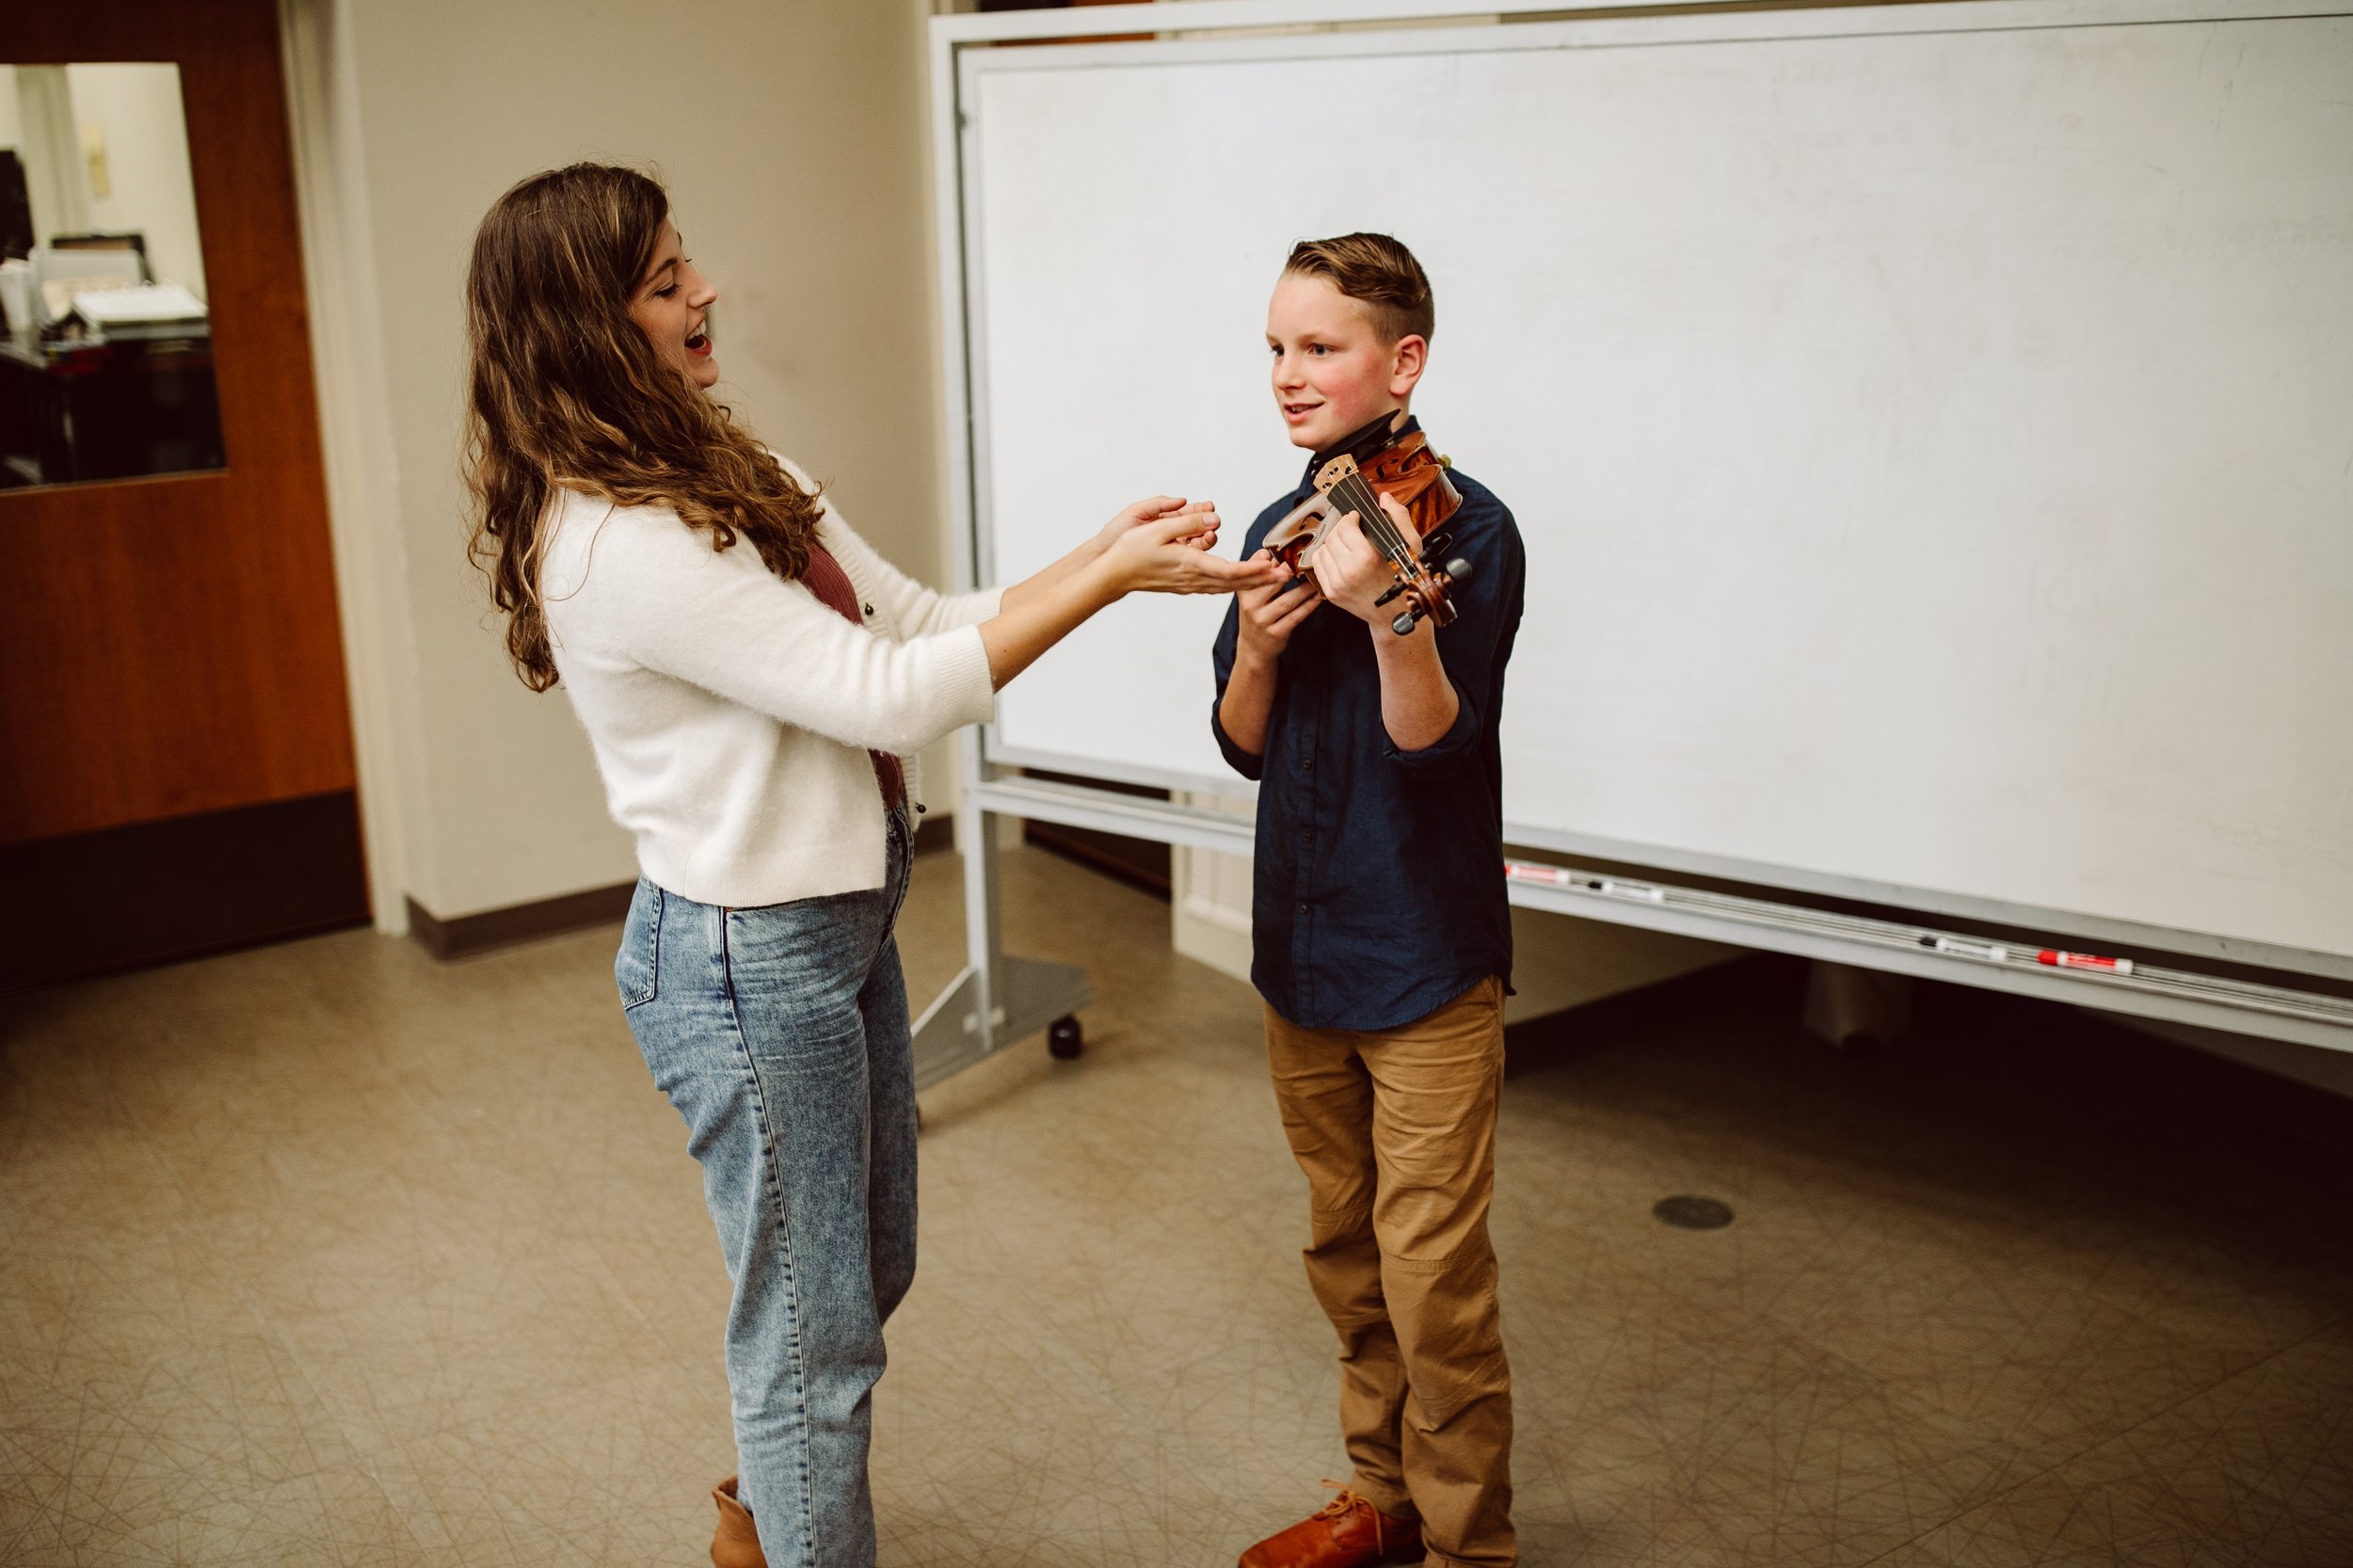 Violin teacher teaching a student in a lesson